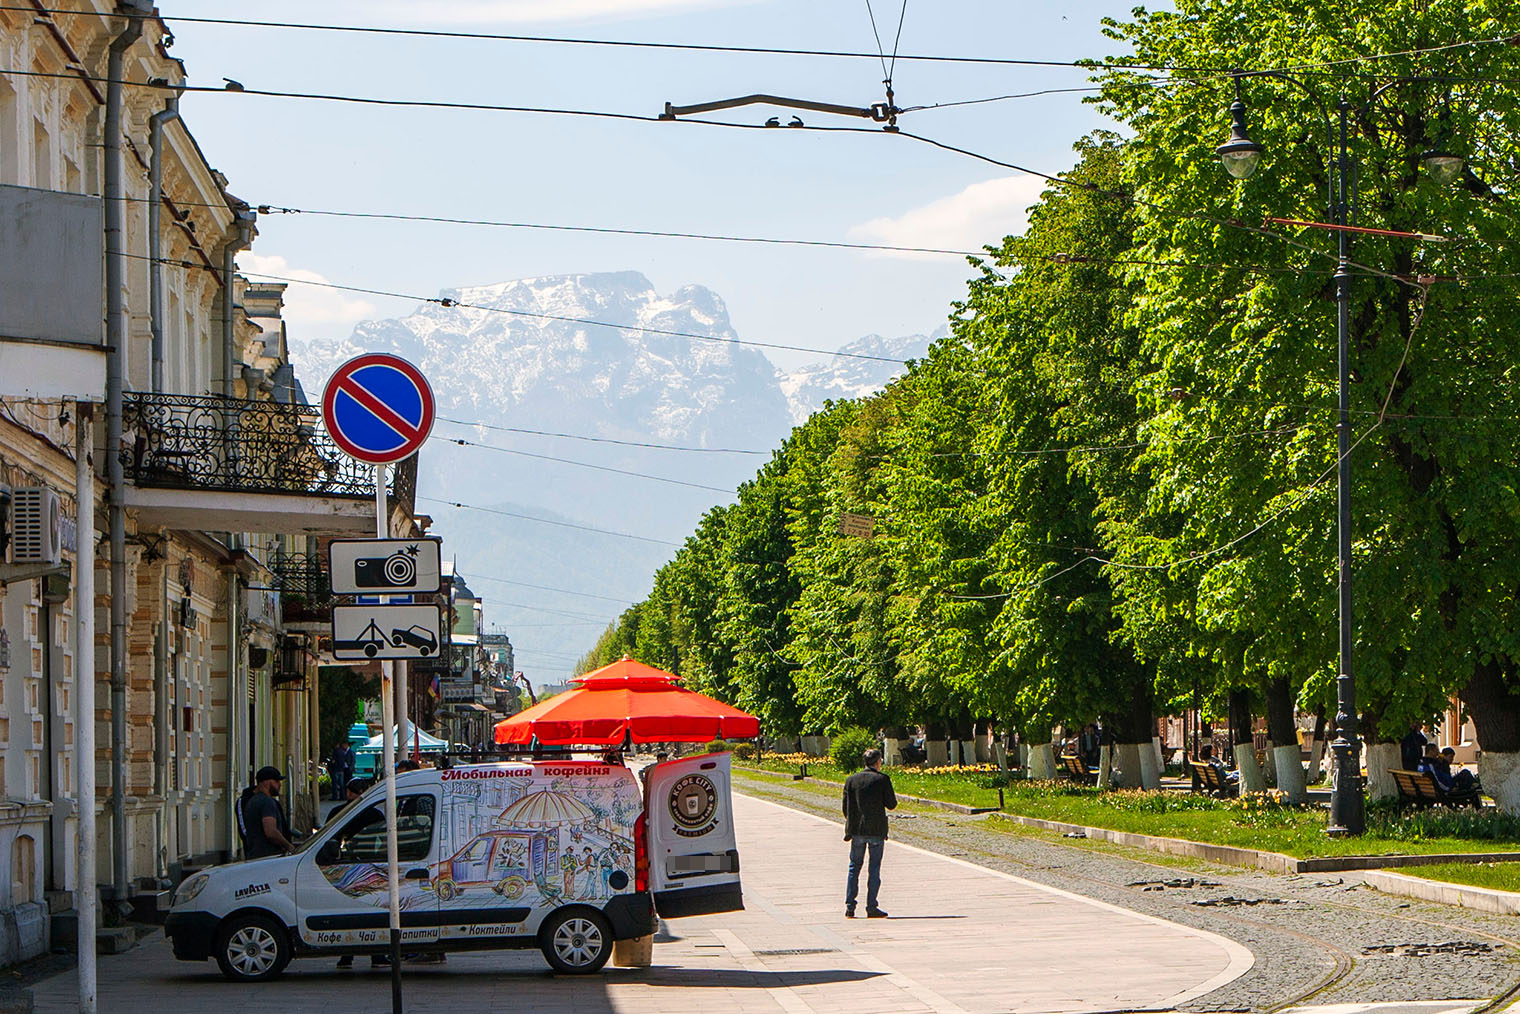 Вид на Столовую гору во Владикавказе. Фотография: Sergei Afanasev / Shutterstock / FOTODOM